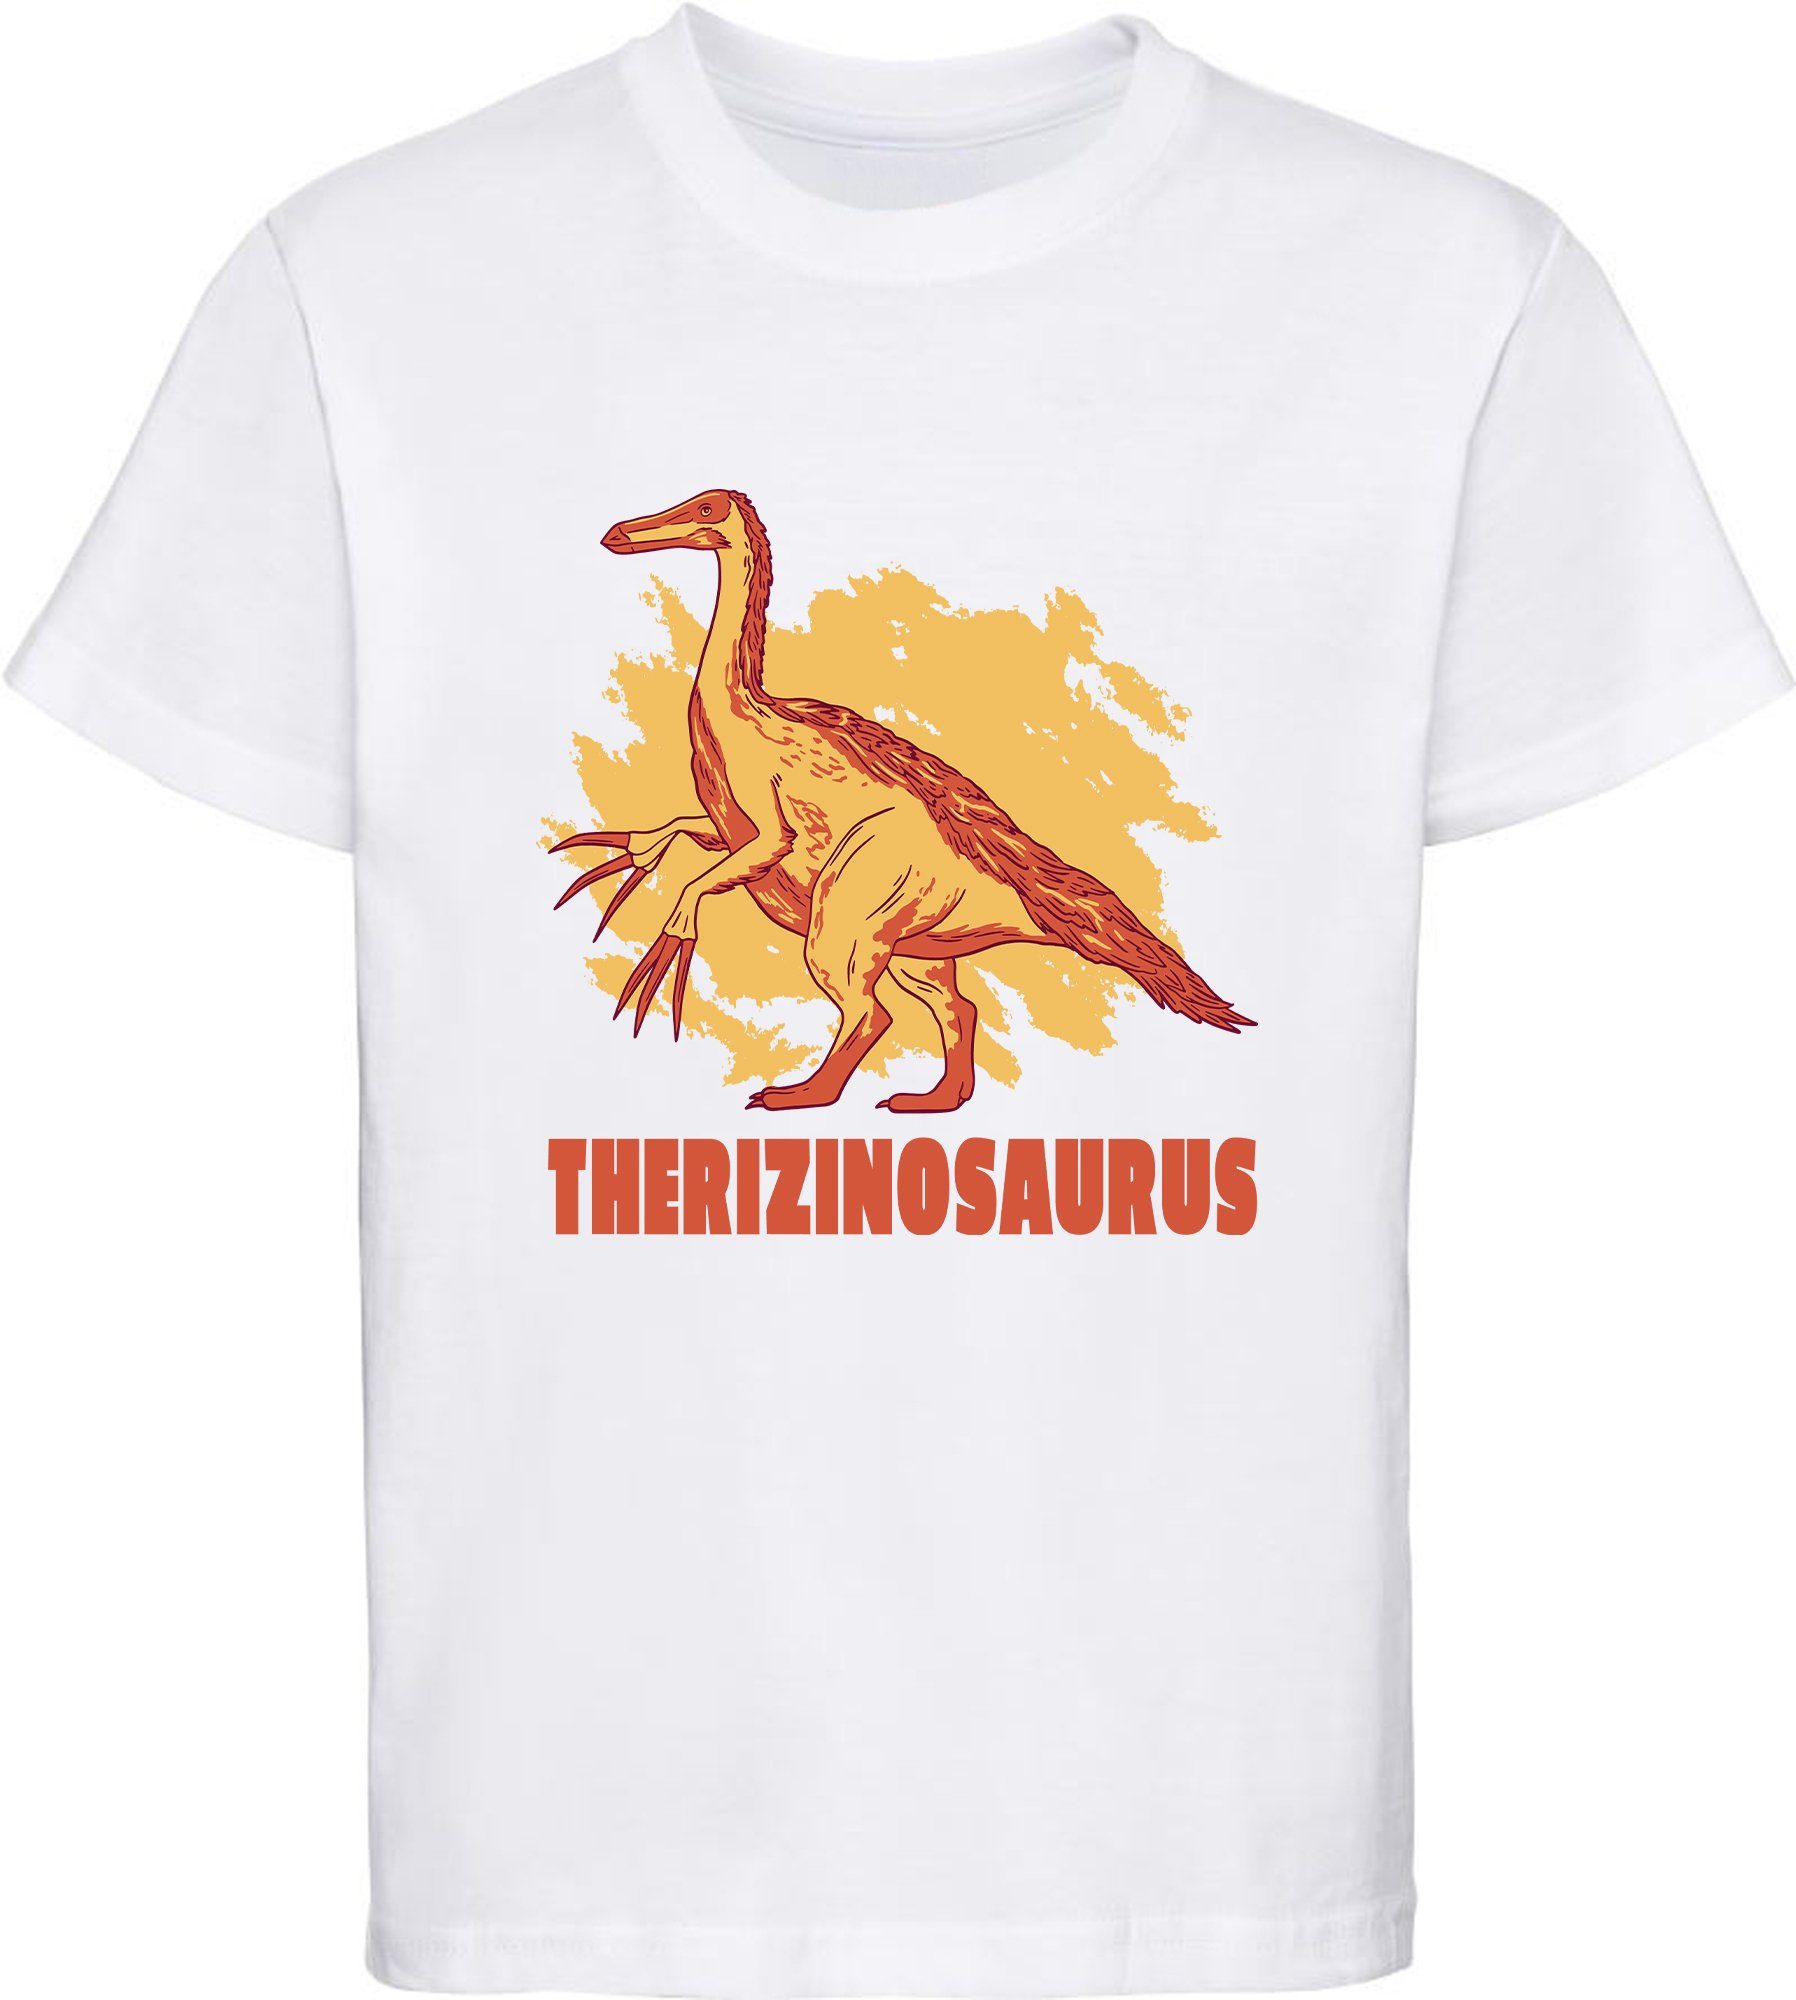 weiß, rot, T-Shirt Kinder blau, schwarz, Print-Shirt i87 weiss Therizinosaurus MyDesign24 mit bedrucktes Baumwollshirt mit Dino,